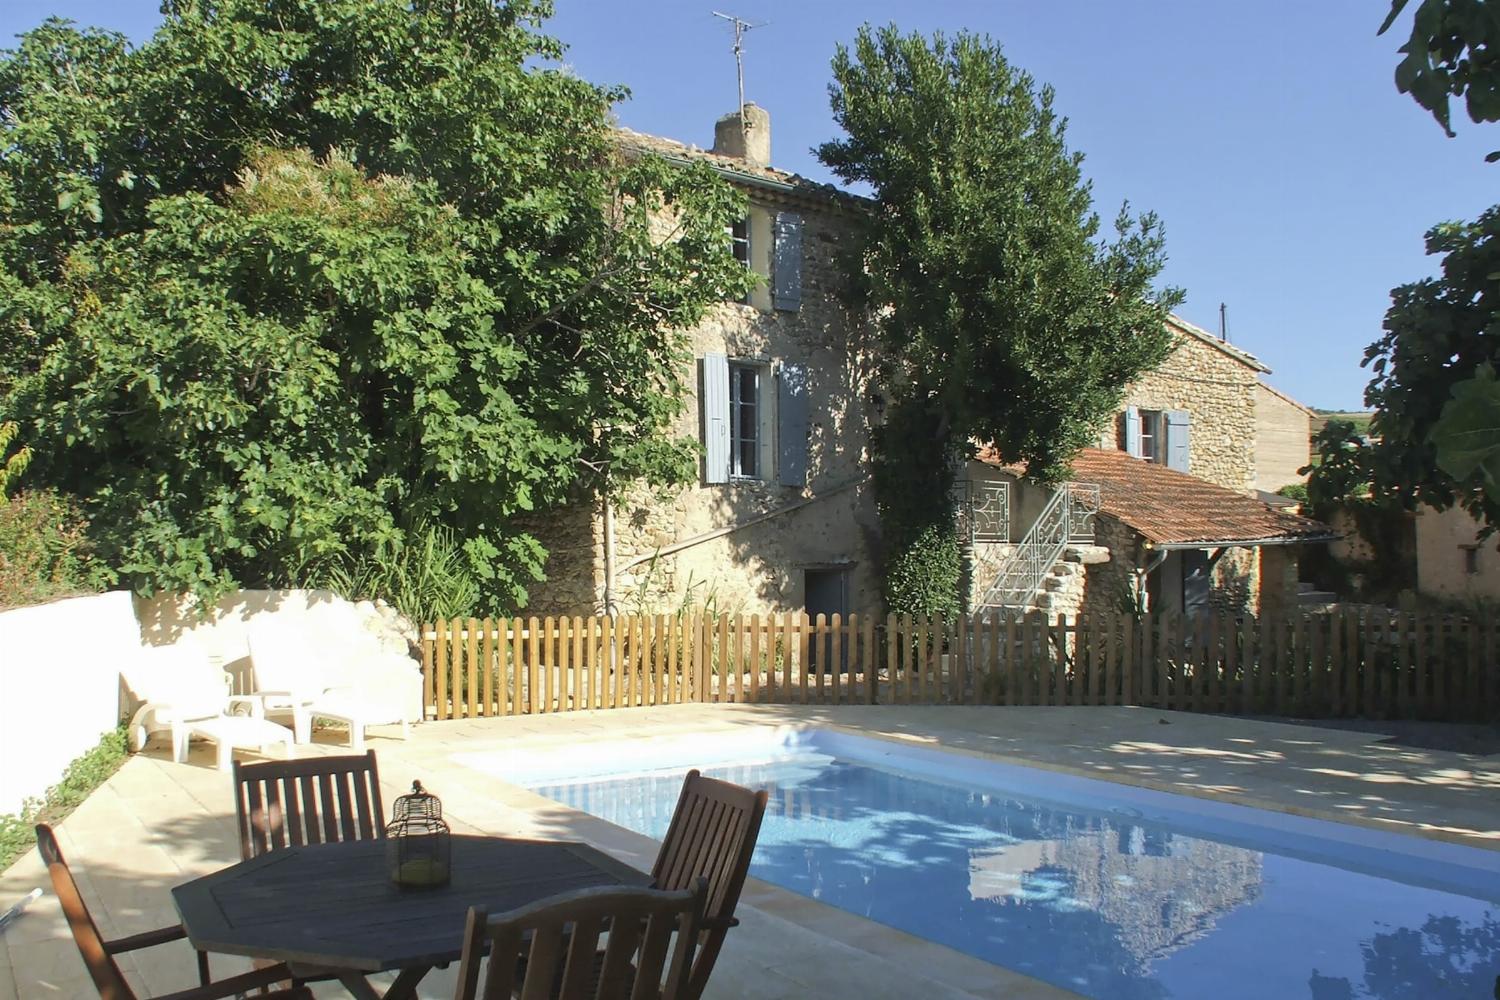 Location de vacances en Provence avec piscine privée